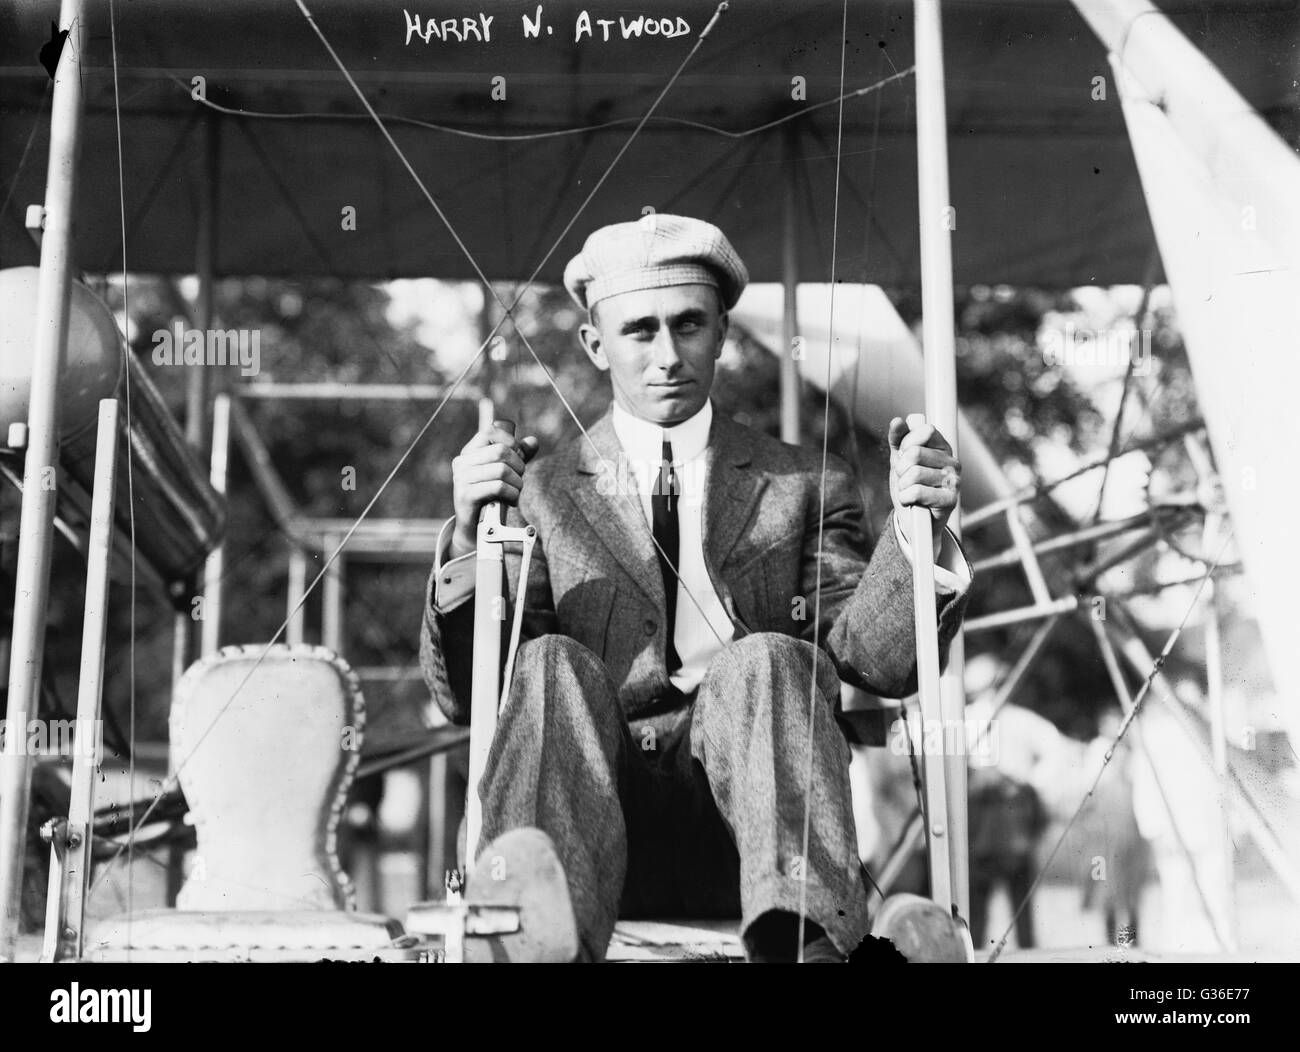 Harry Atwood (1883-1967) est devenu l'un des plus célèbres circulaires lorsqu'il a établi des records de vol longue distance de Boston à Washington et de Saint-Louis à New York. Il a réussi son biplan sur la pelouse Sud de la Maison Blanche pour recevoir une bourse du président William Howard Taft. Banque D'Images